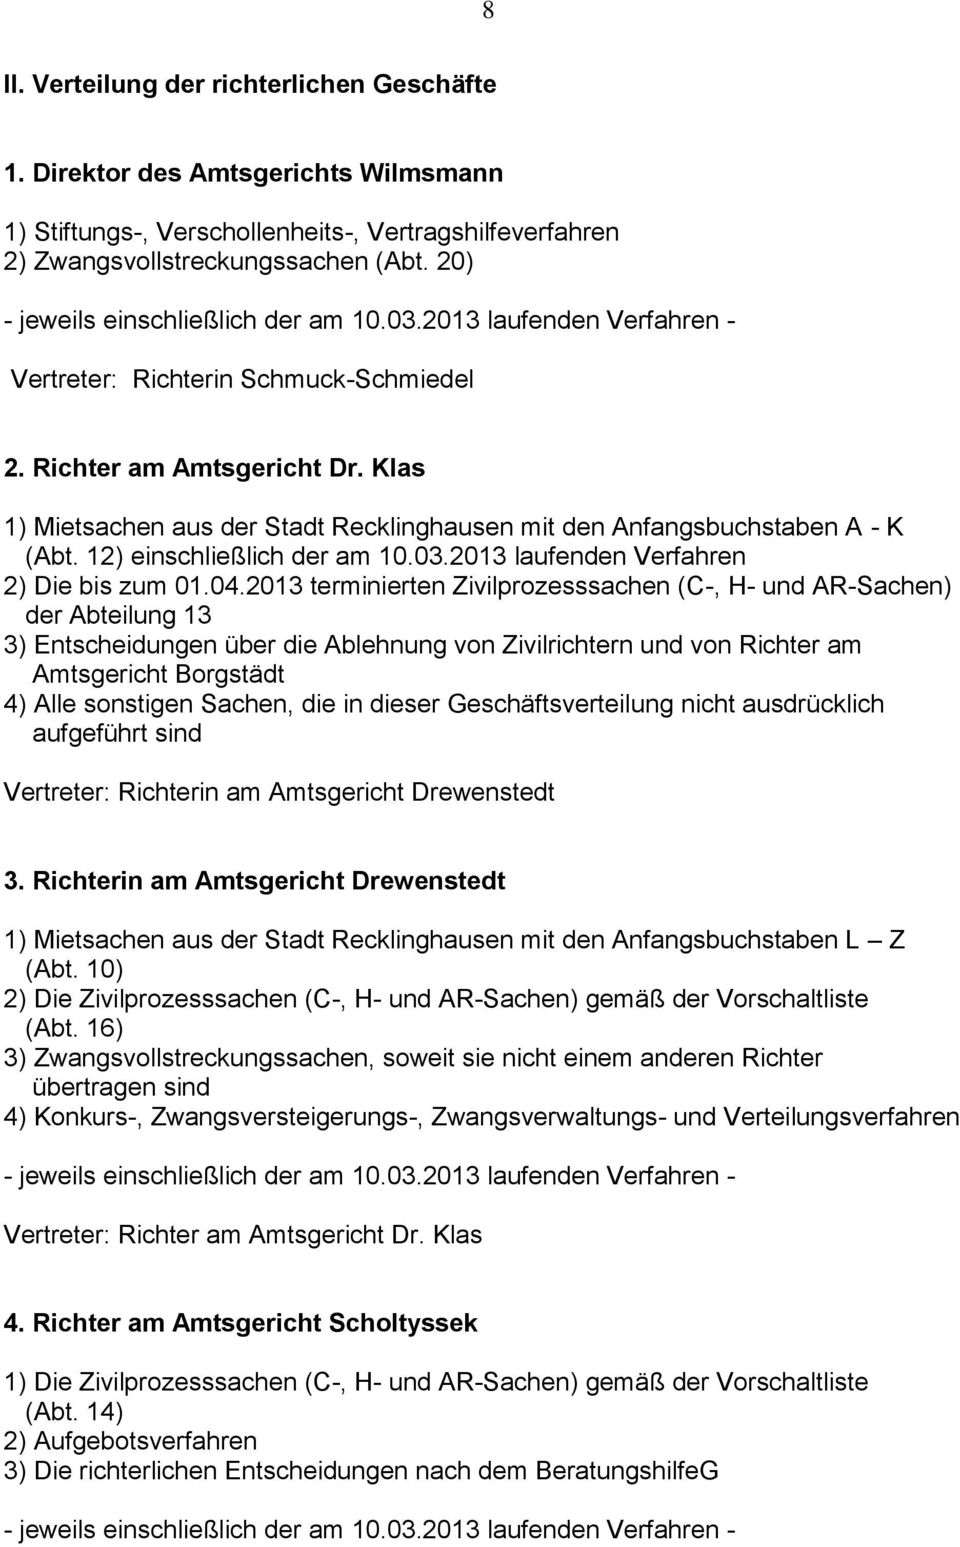 Klas 1) Mietsachen aus der Stadt Recklinghausen mit den Anfangsbuchstaben A - K (Abt. 12) einschließlich der am 10.03.2013 laufenden Verfahren 2) Die bis zum 01.04.